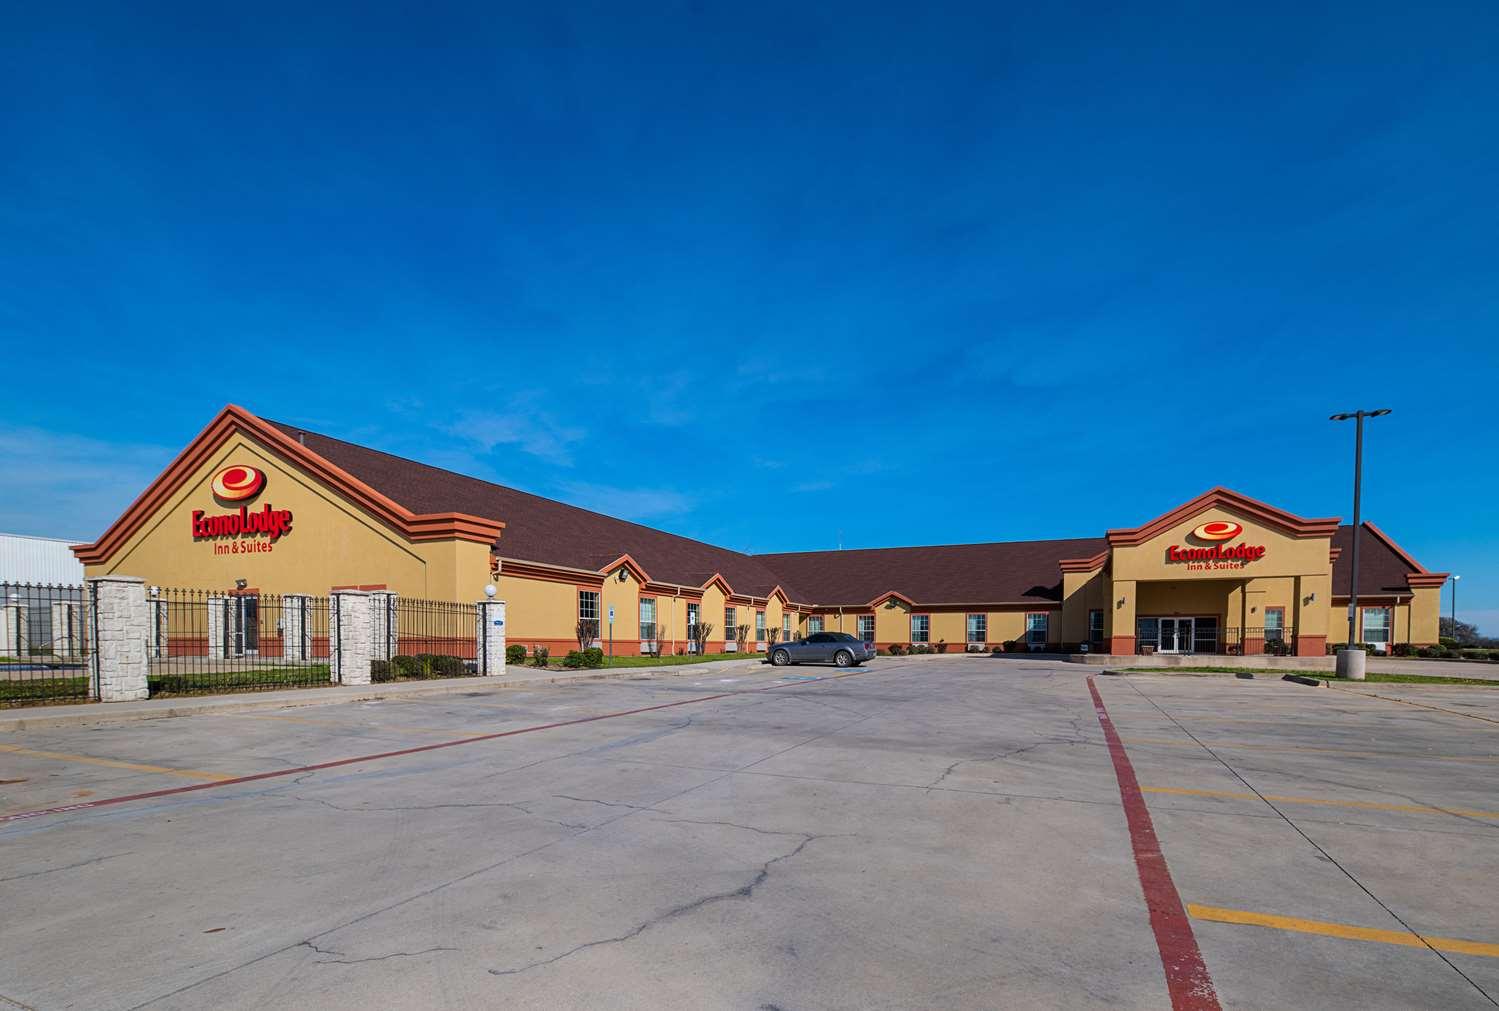 Econo Lodge Inn and Suites Bridgeport in Bridgeport, TX